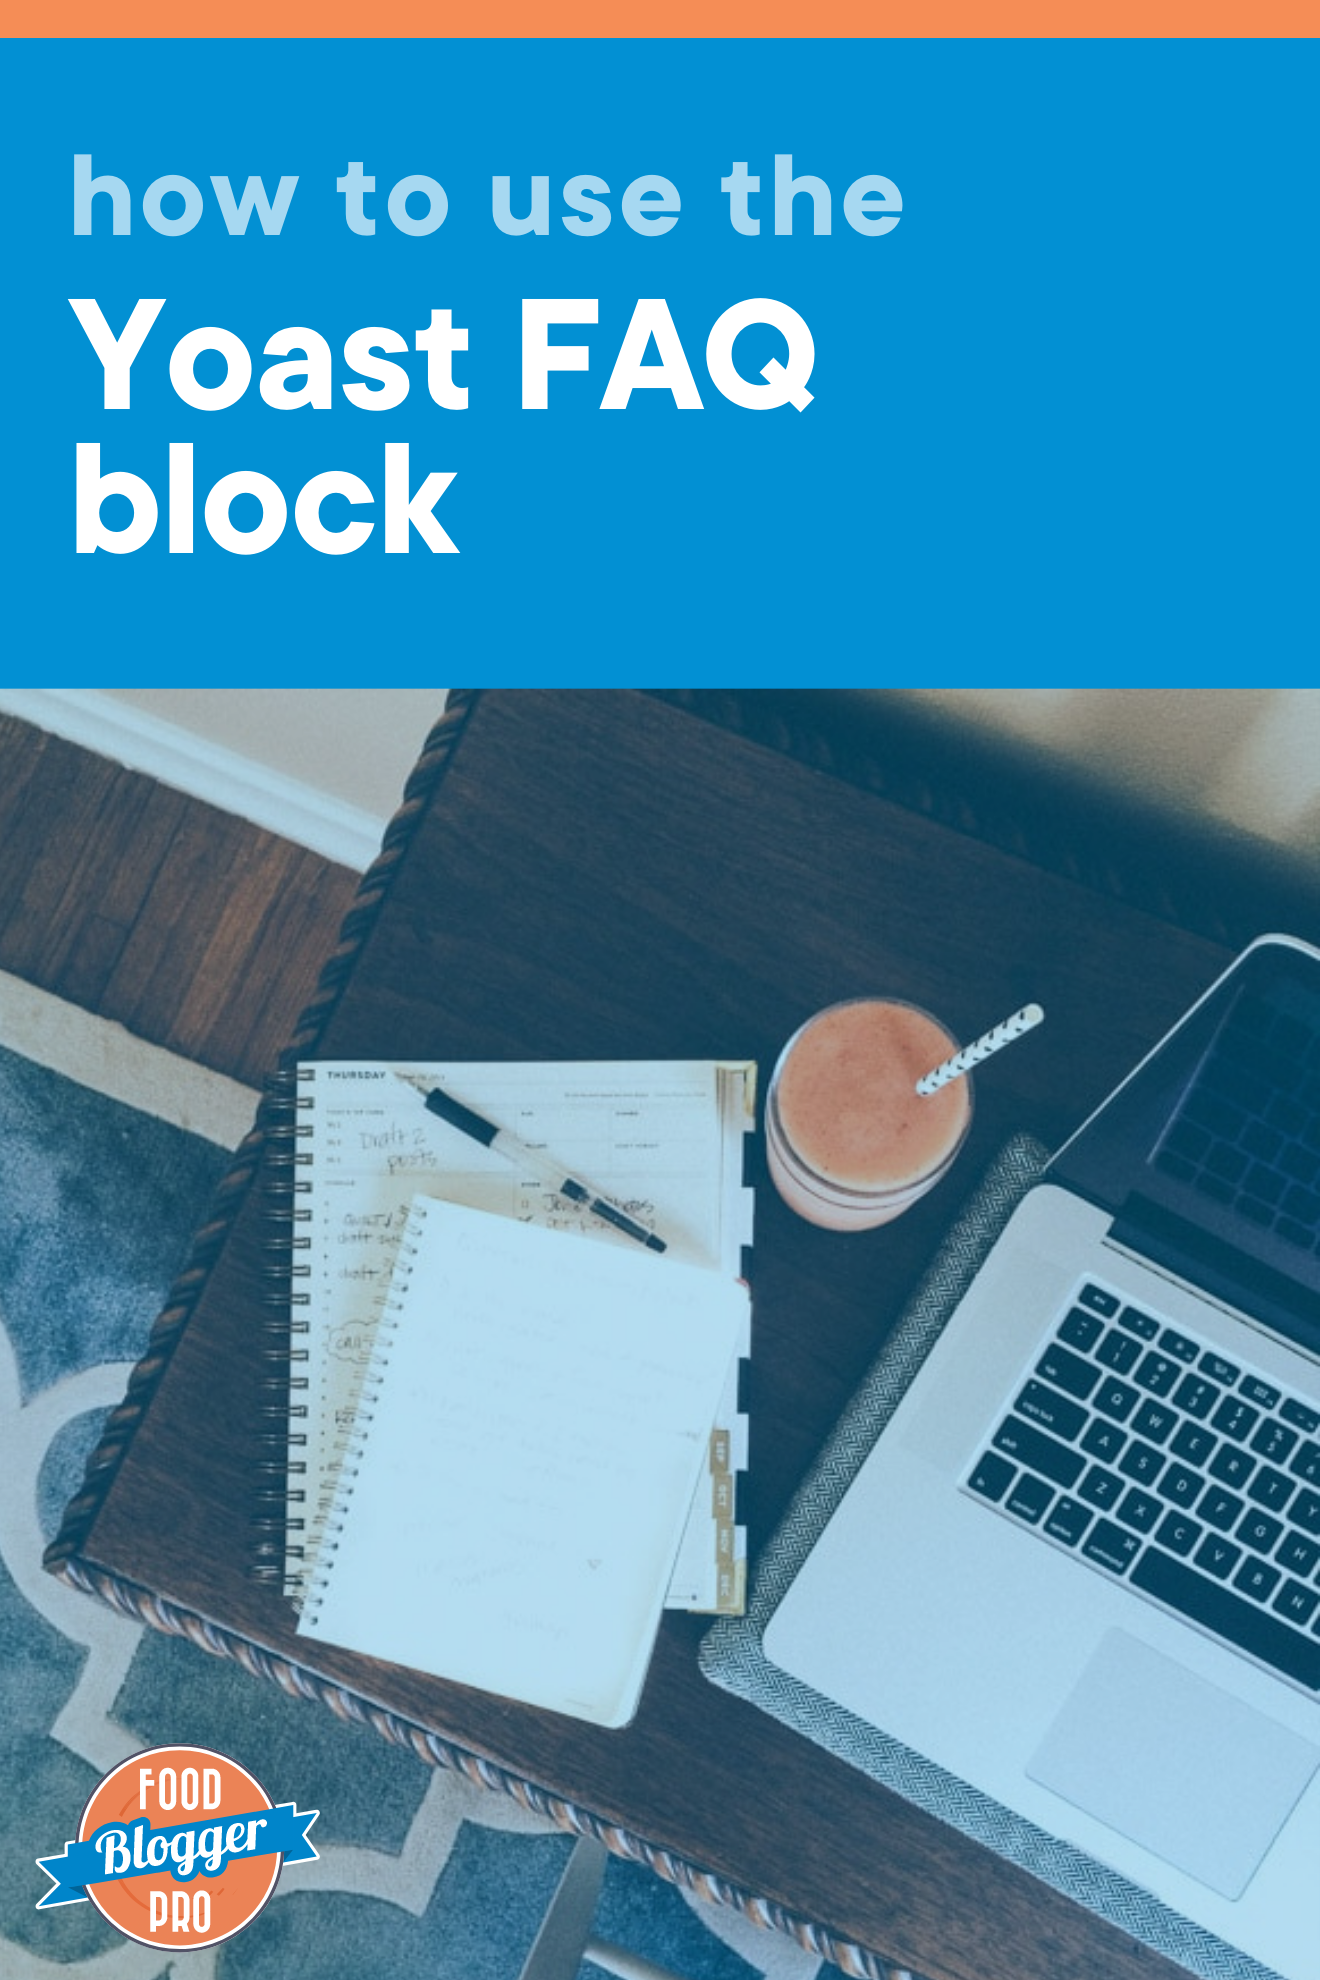 台面上电脑照片和笔记本 以及博客文章标题“如何使用yoastfaq块